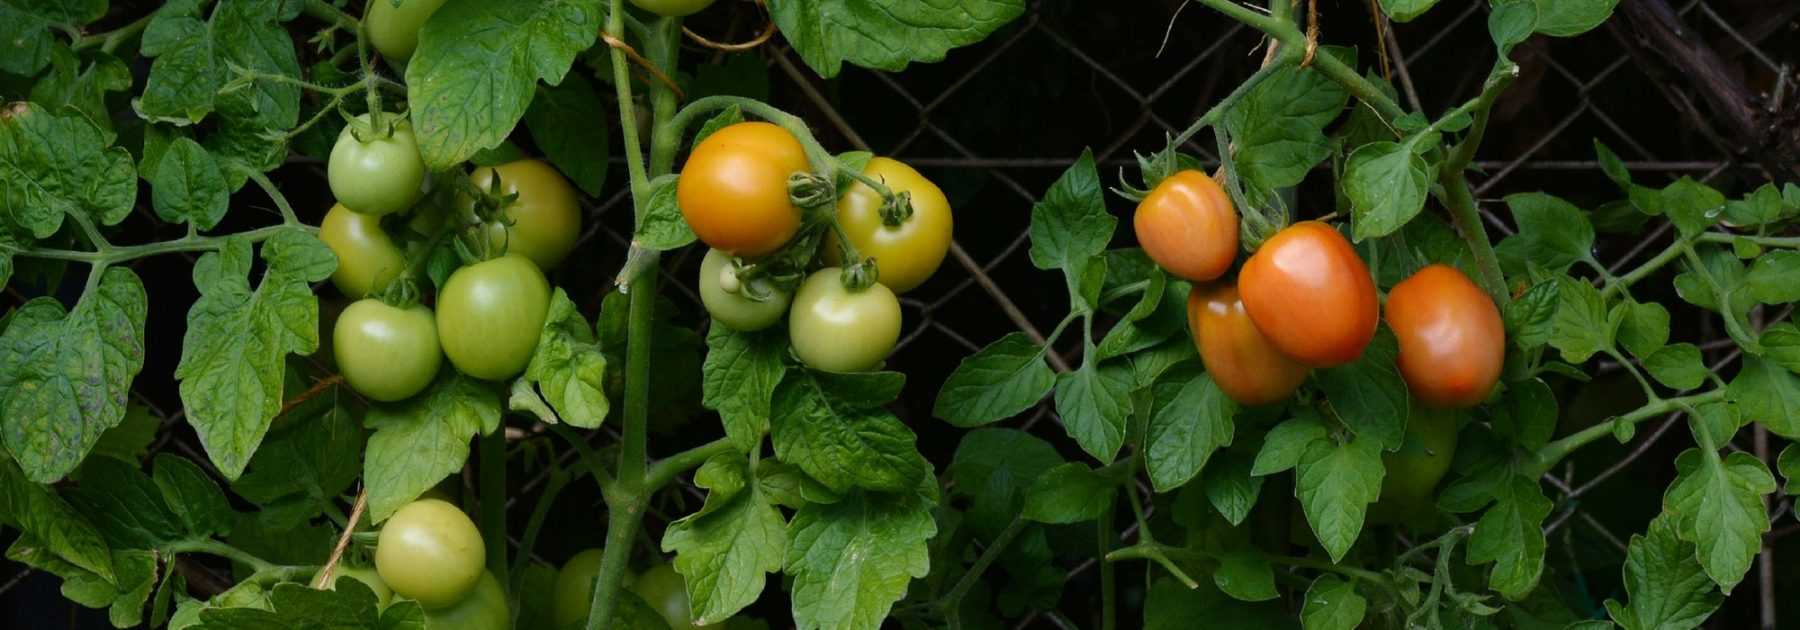 Construire une cage à tomates - Tutoriel